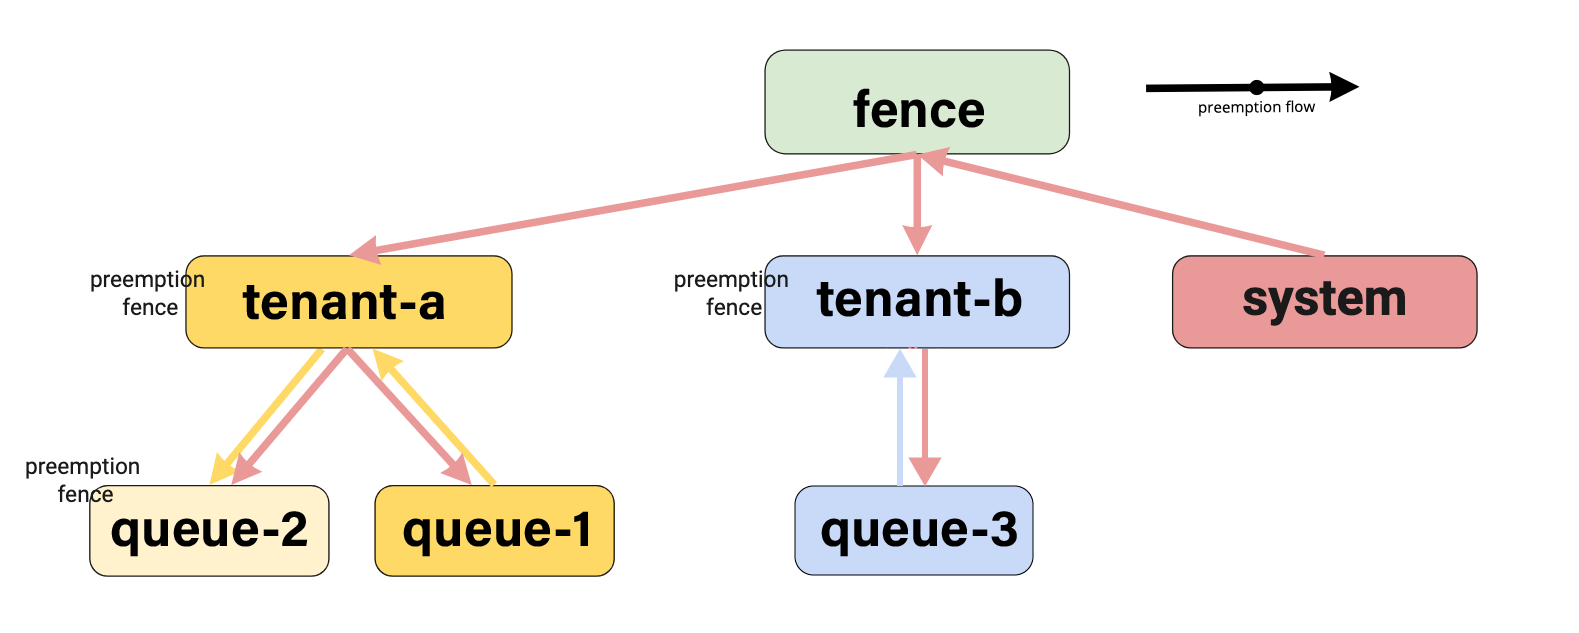 preemption_fence_hierarchy_case